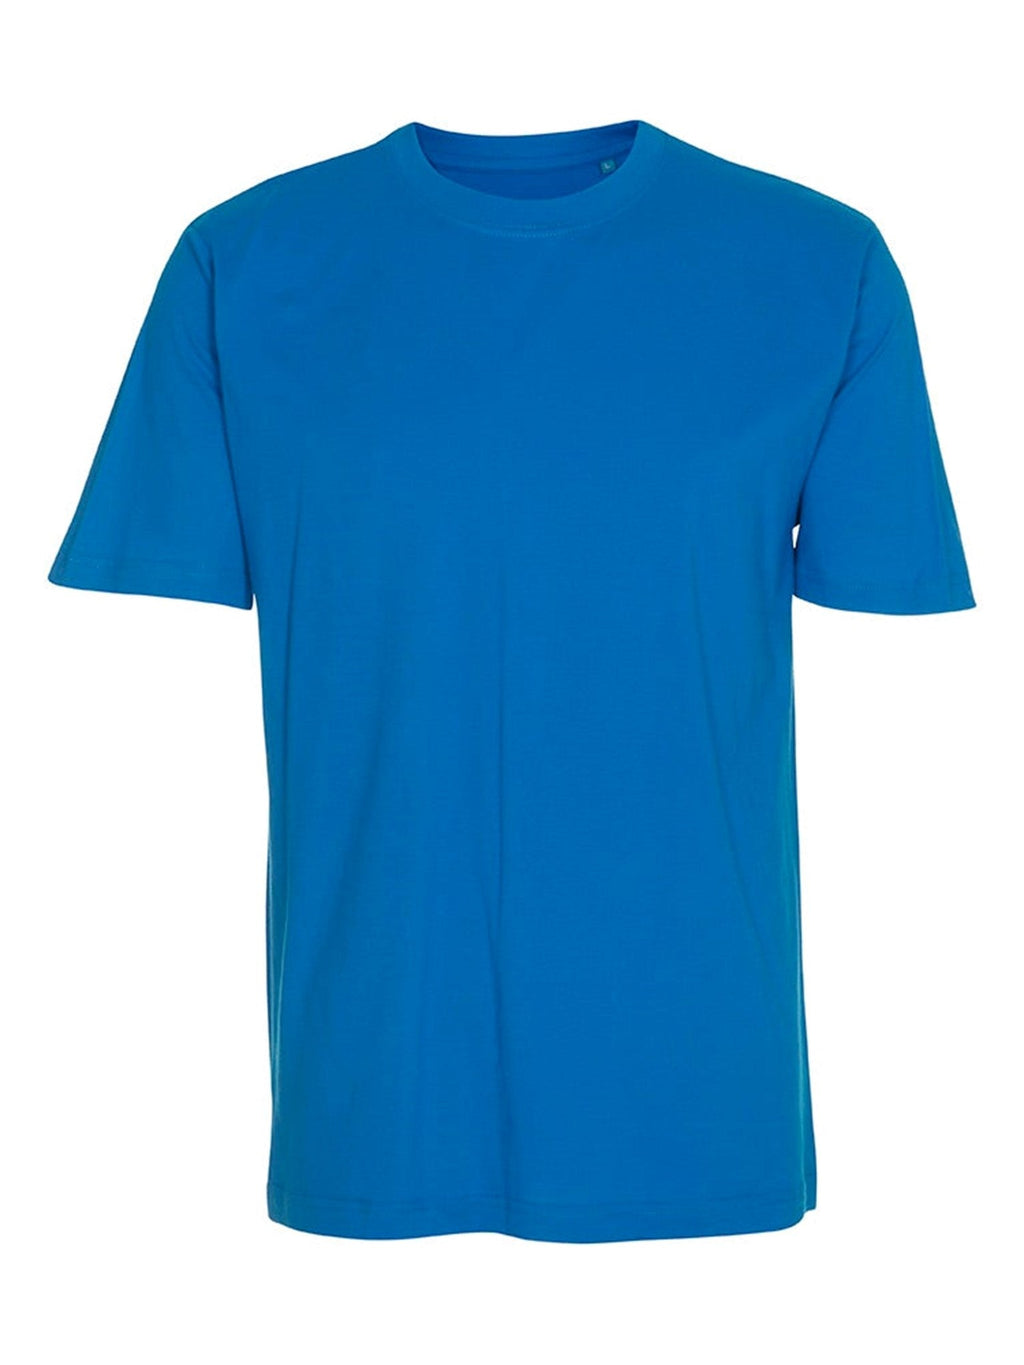 Nadmerné tričko - modrá